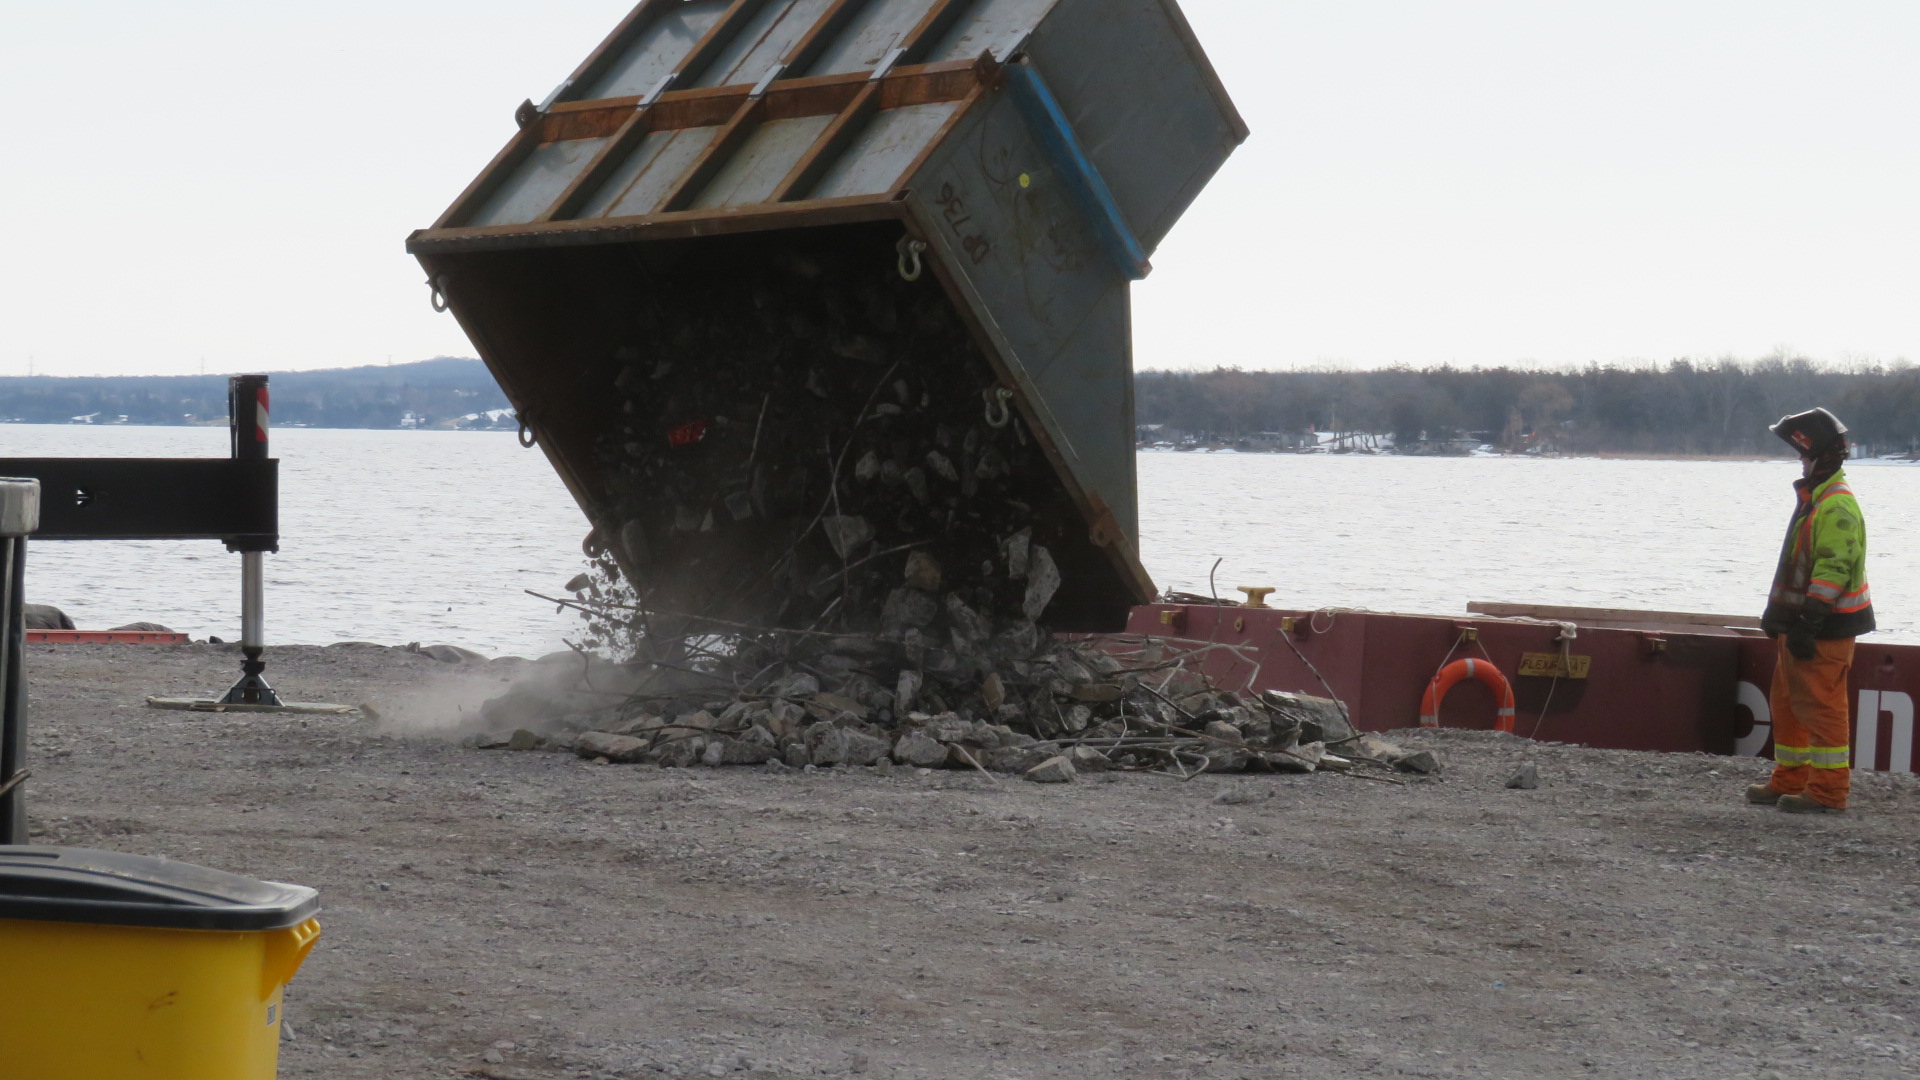 Removing concrete debris from the containment bin